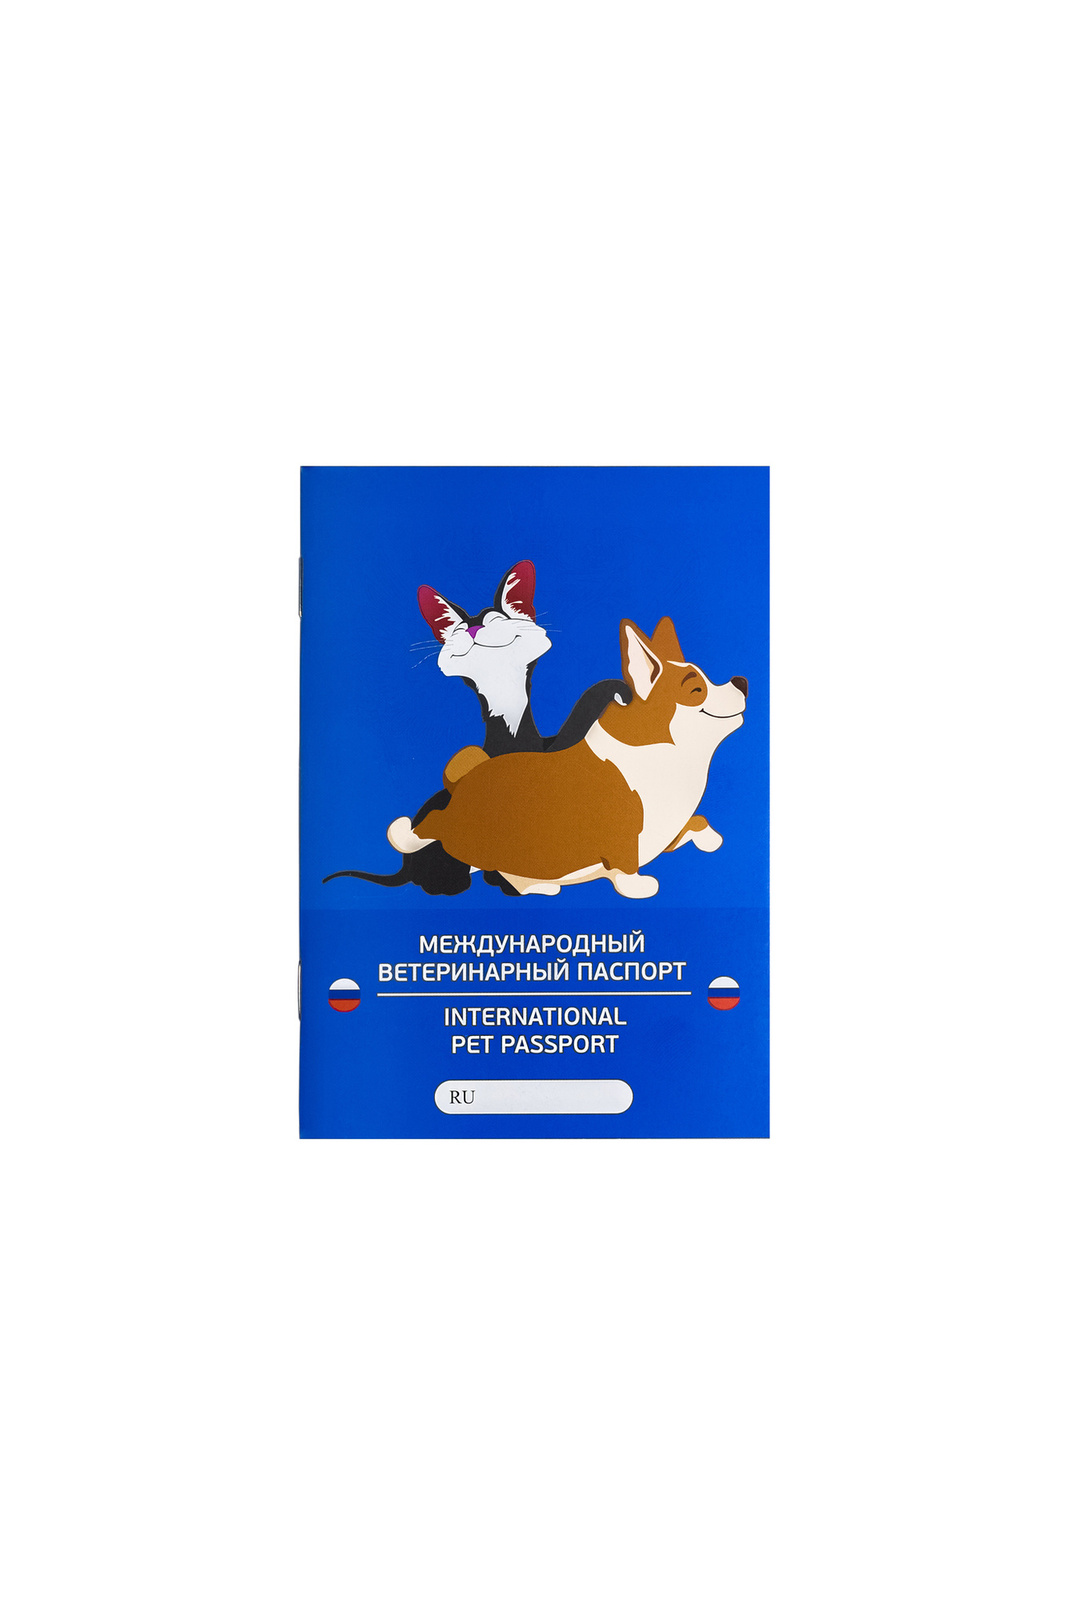 VETЗАБОТА VETЗАБОТА паспорт ветеринарный А6, 28 листов, обложка с ламинацией матовой (10 г) международный ветеринарный паспорт vitavet для собак 1шт